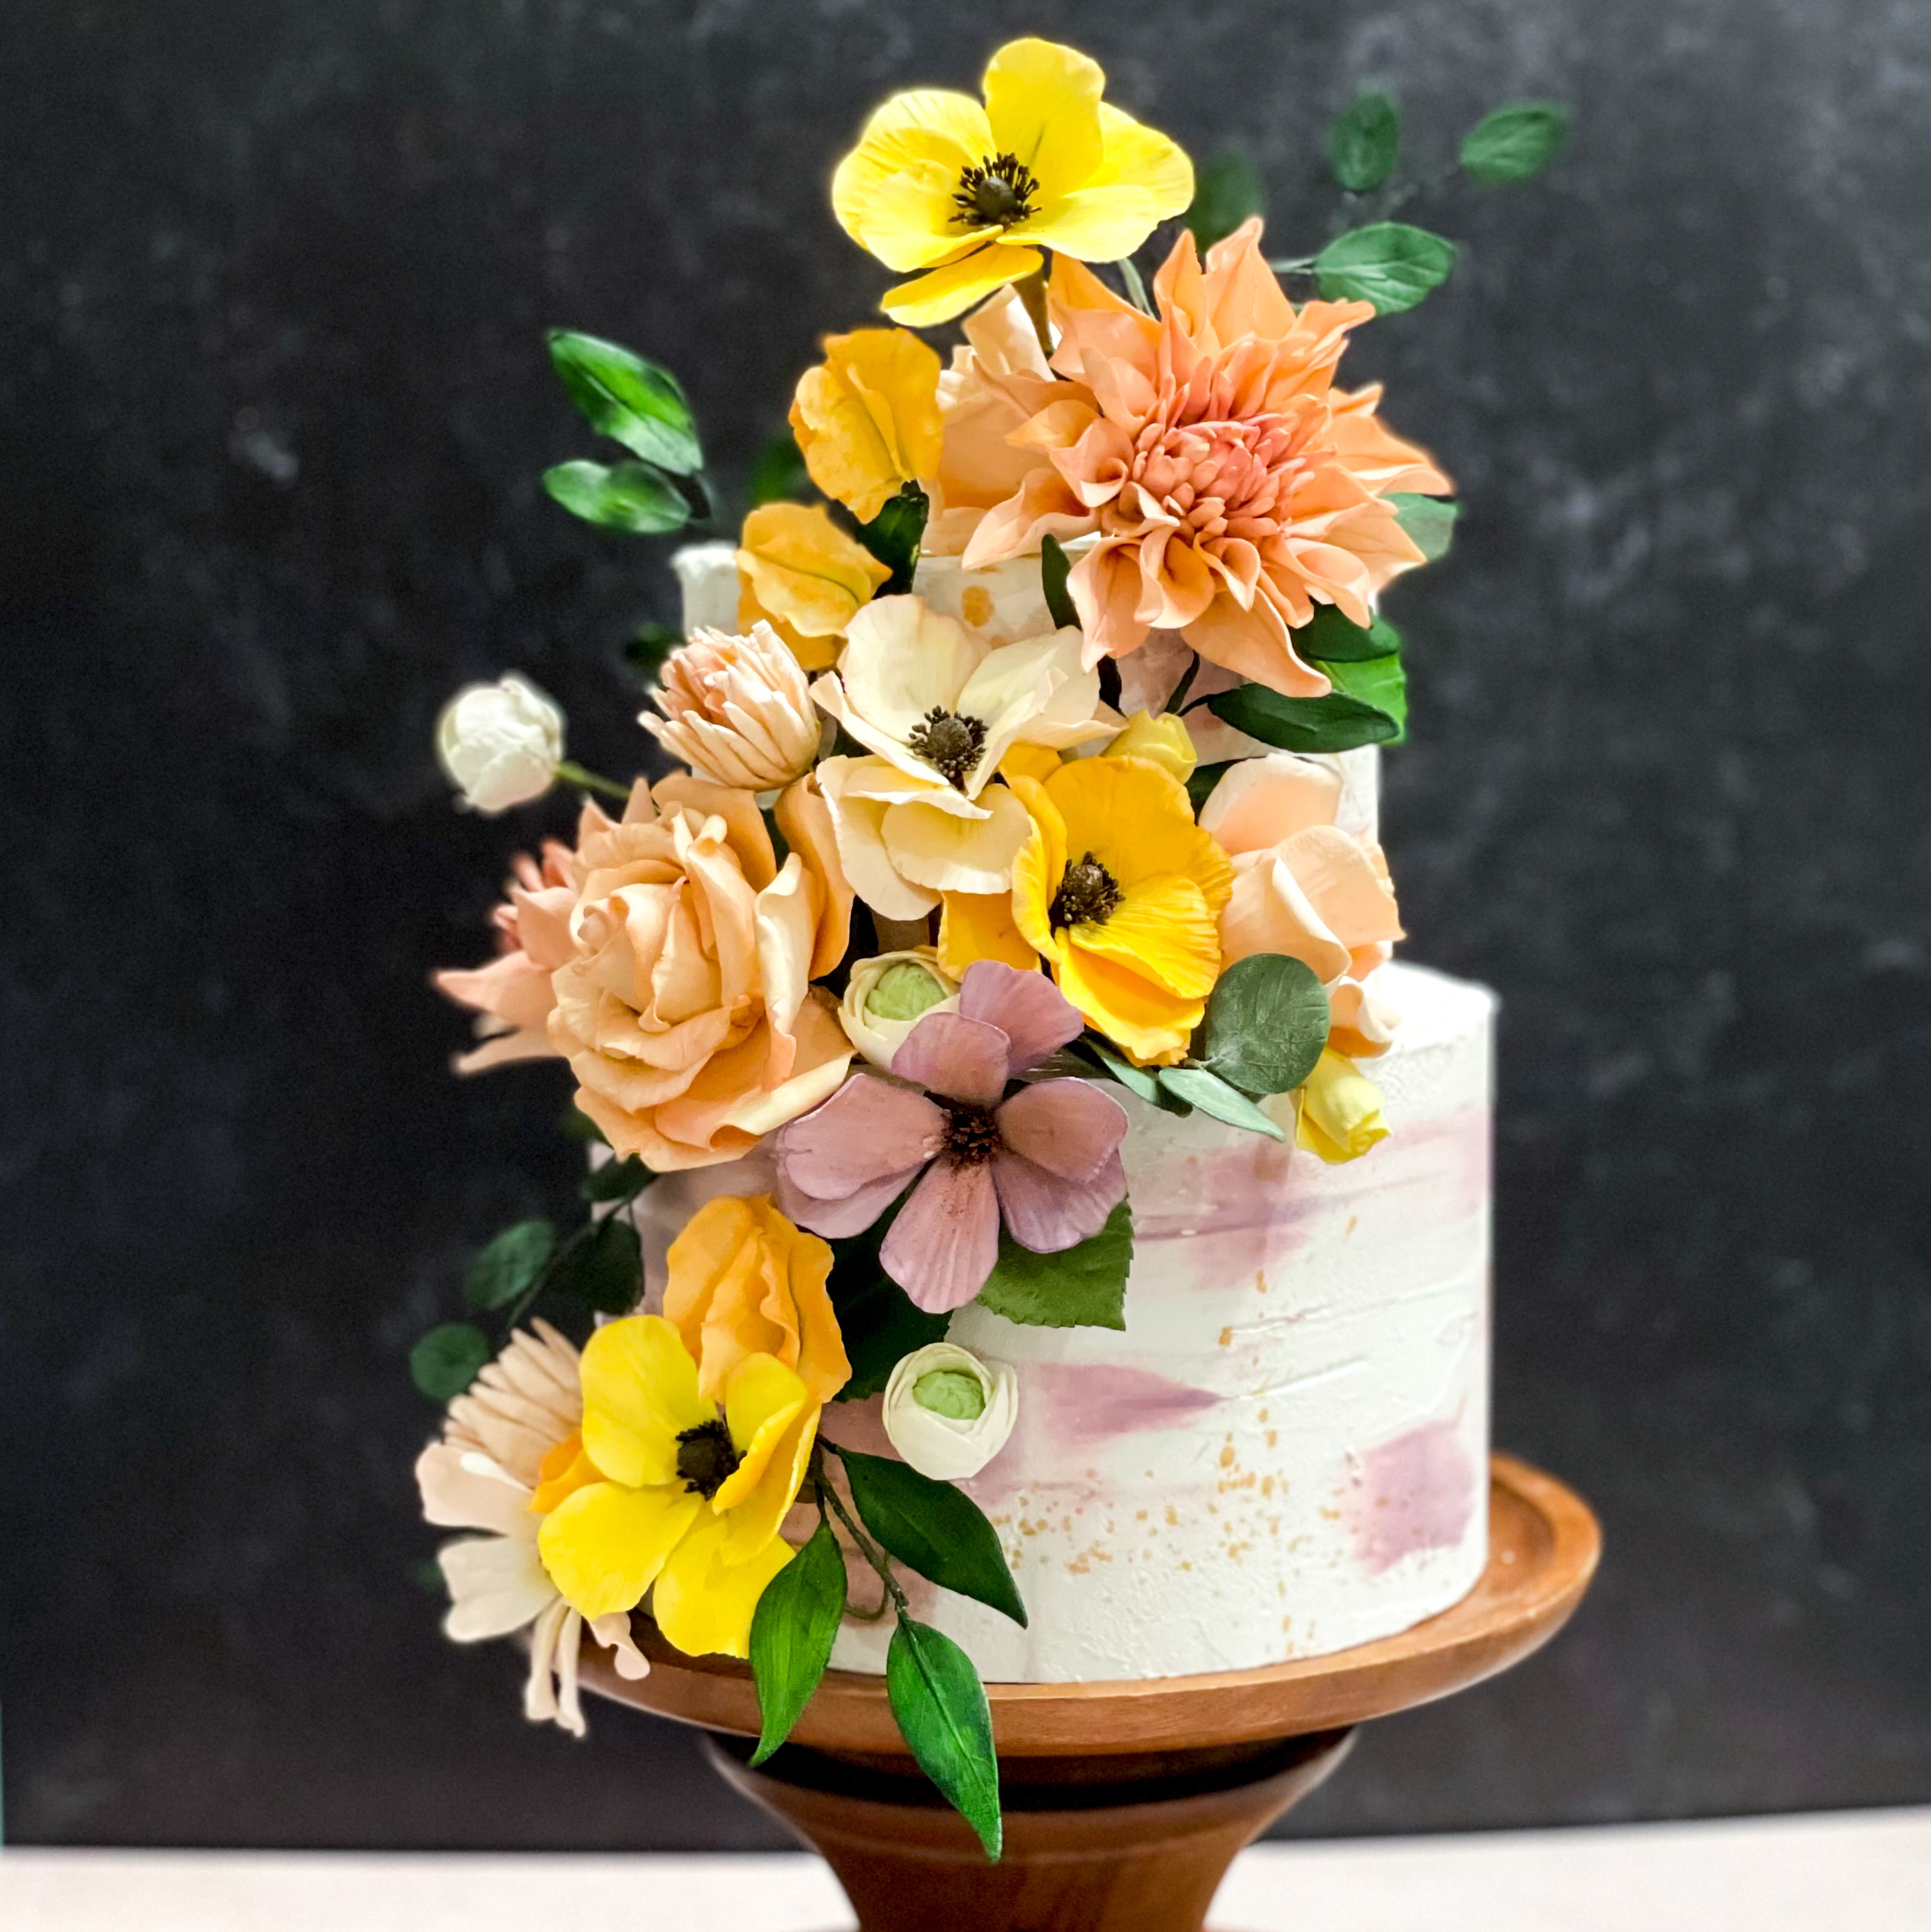 2023 Wedding Trends with Sugar Flowers Sugar Flowers by Kelsie Cakes